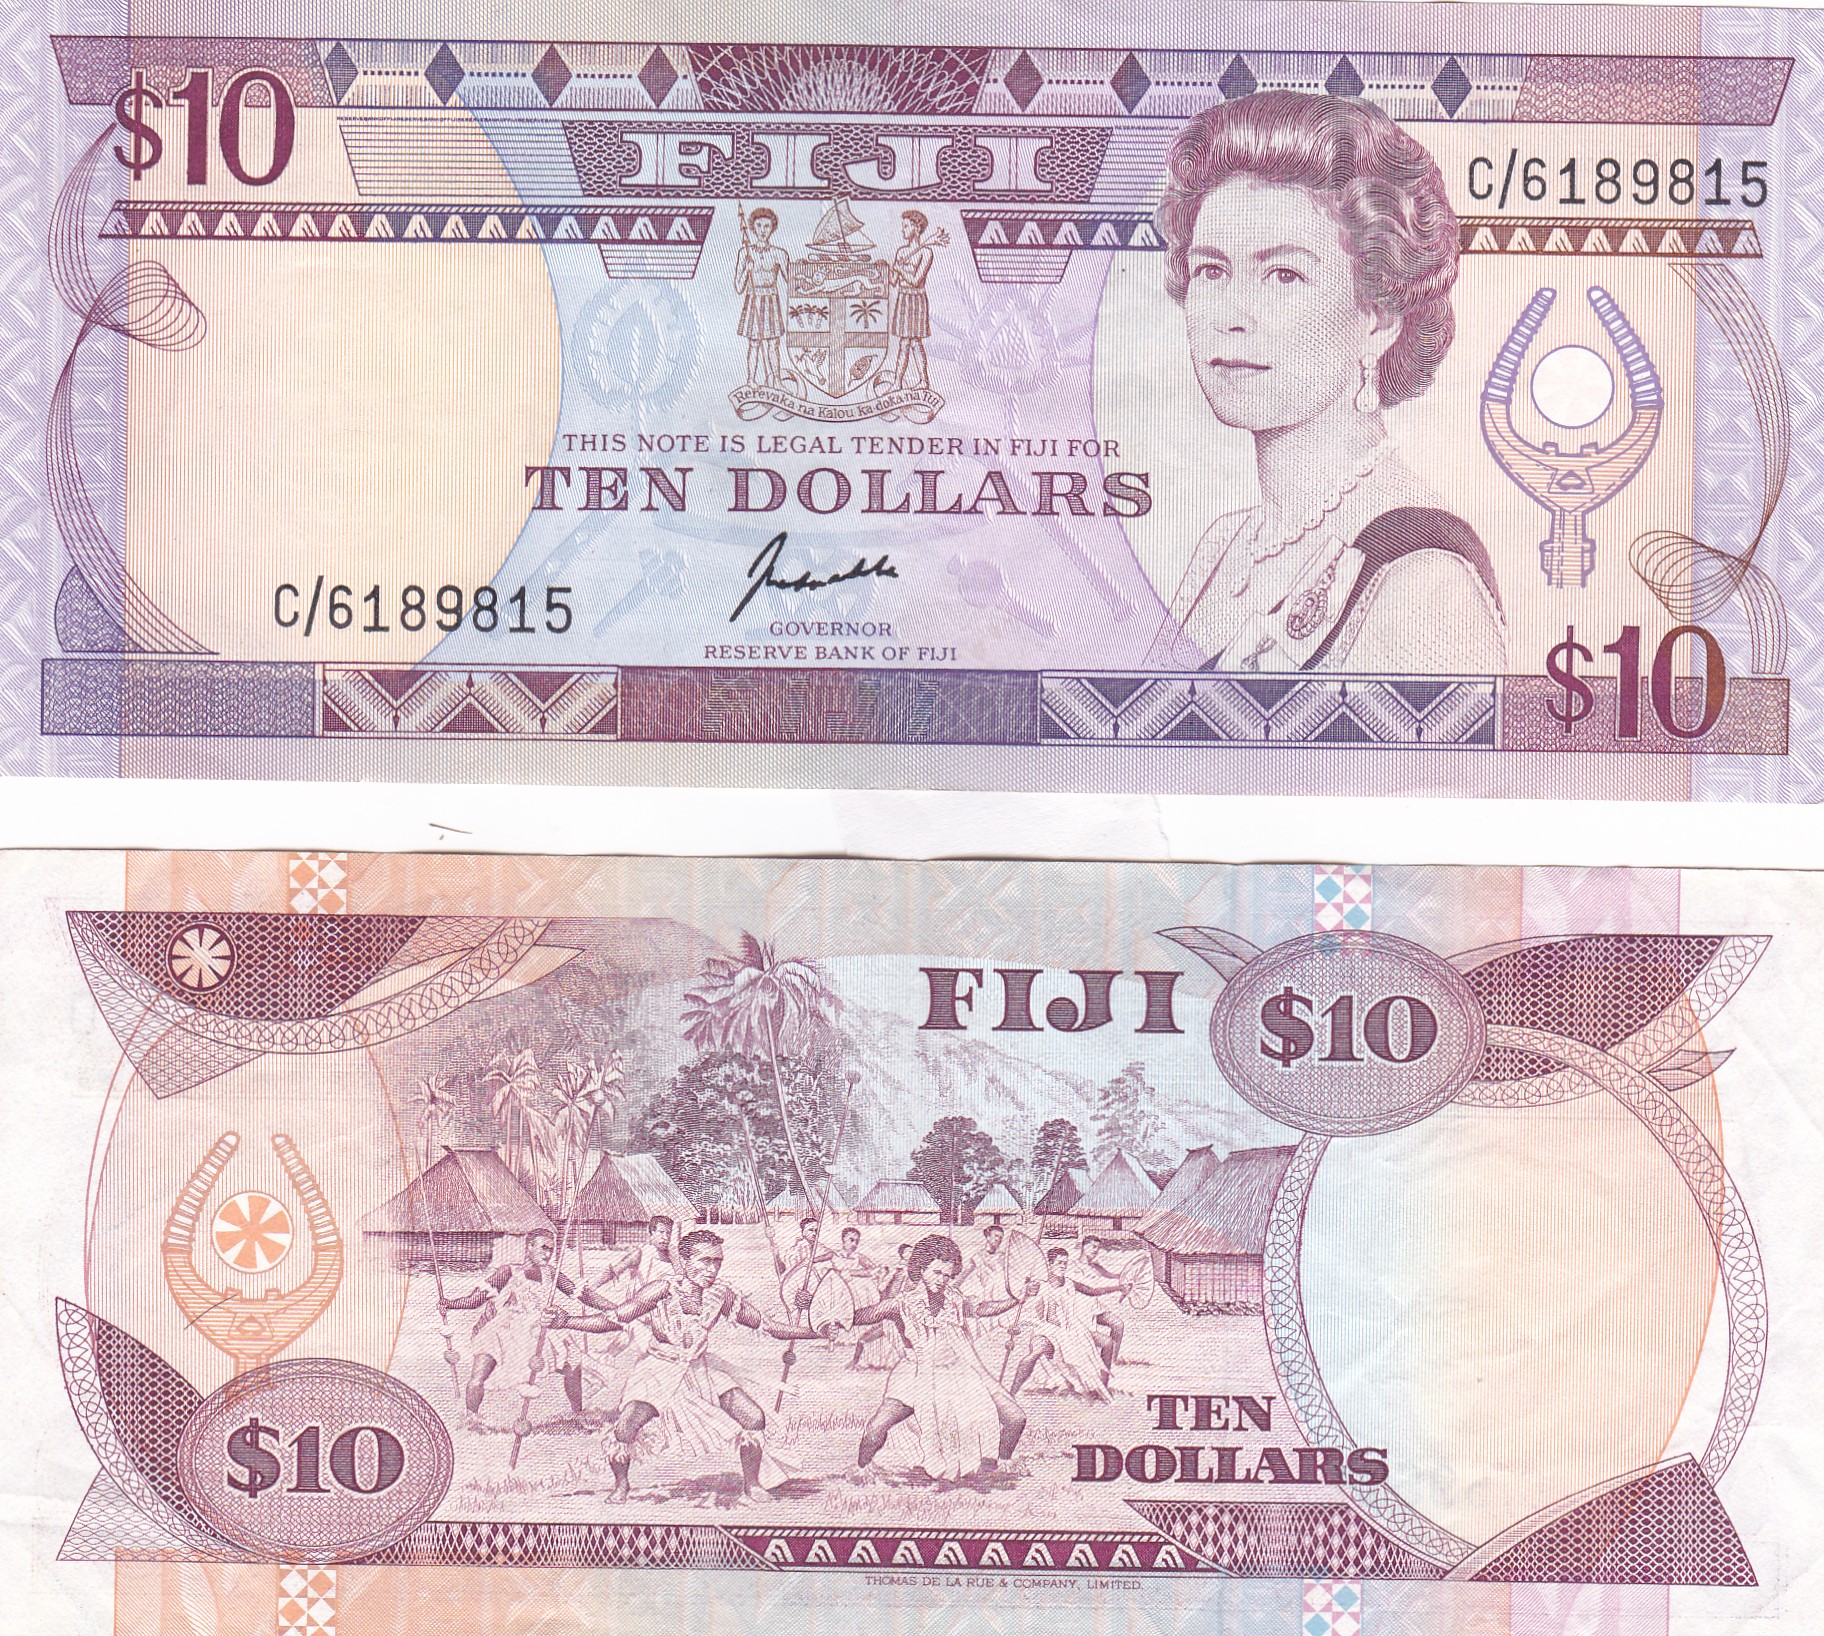 Fiji #92/XF  10 Dollars